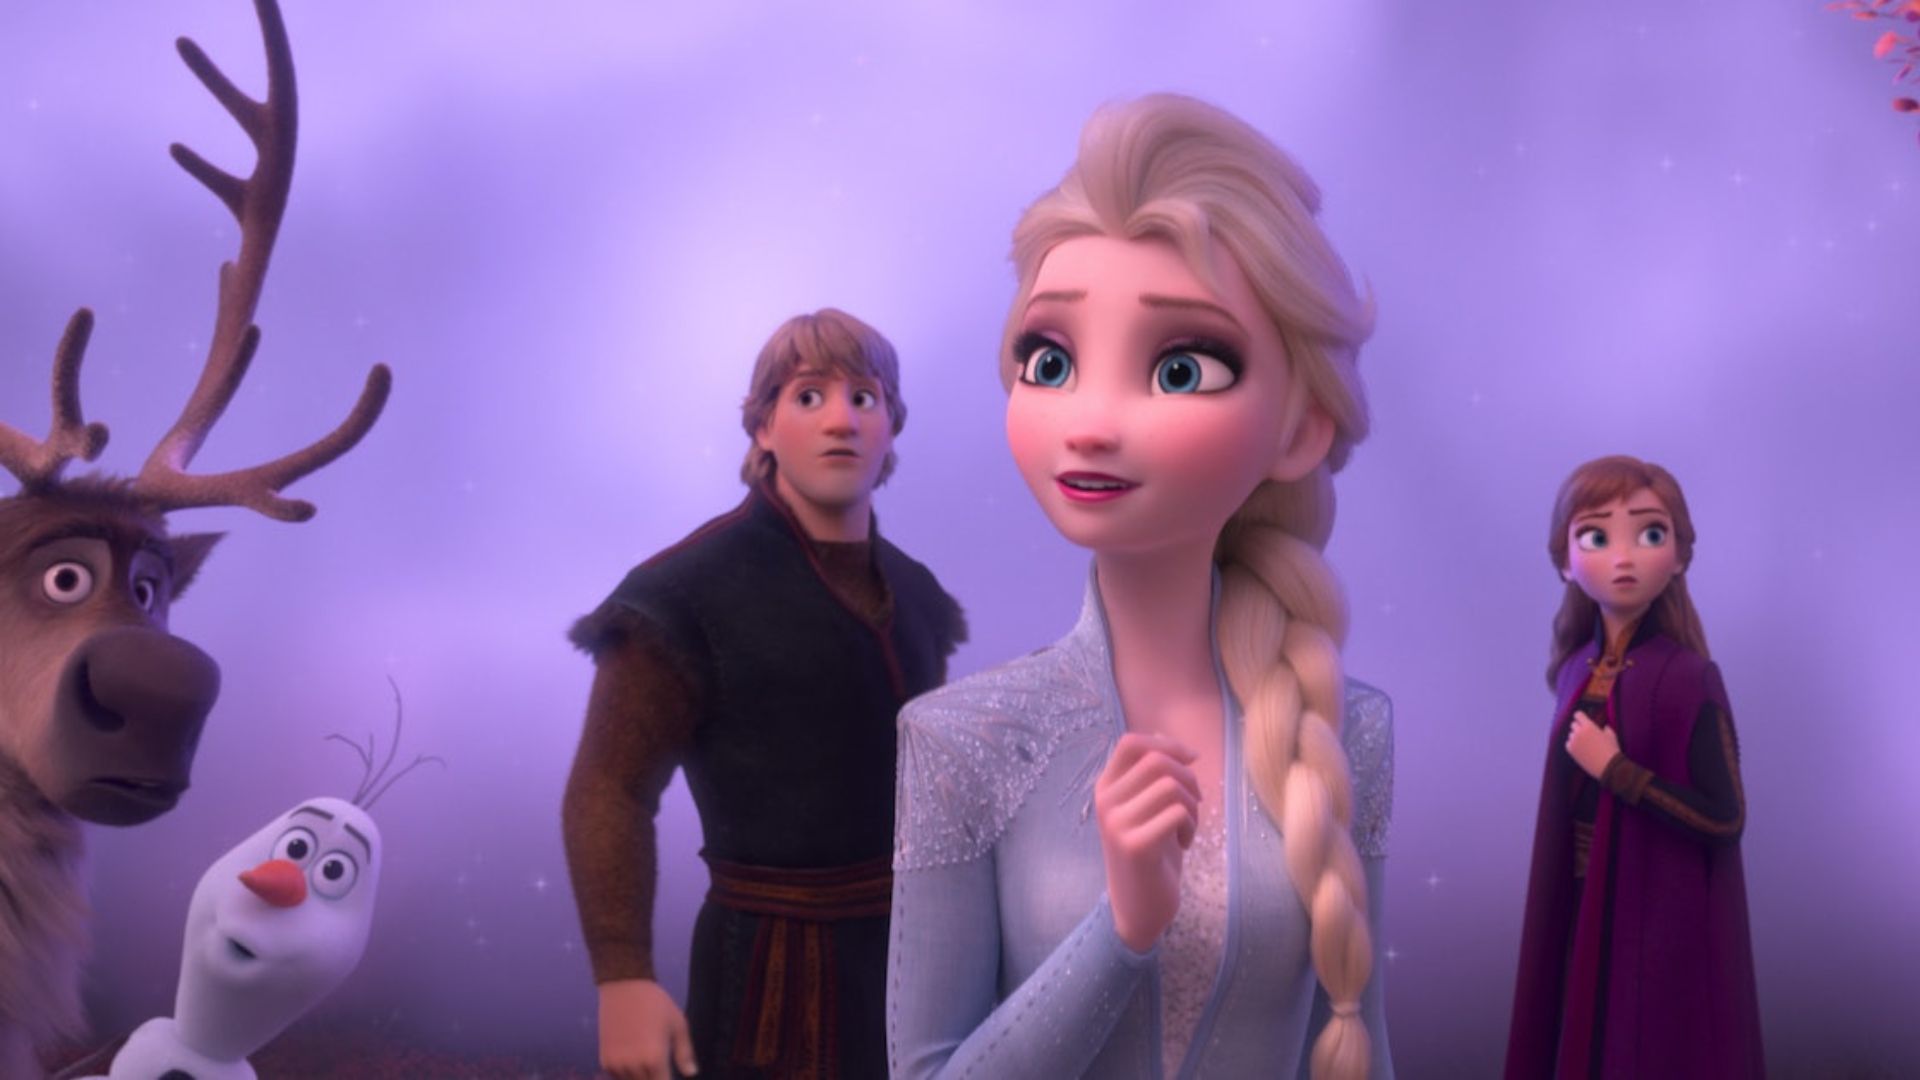 Por que “Frozen 3” poderia salvar a Disney?